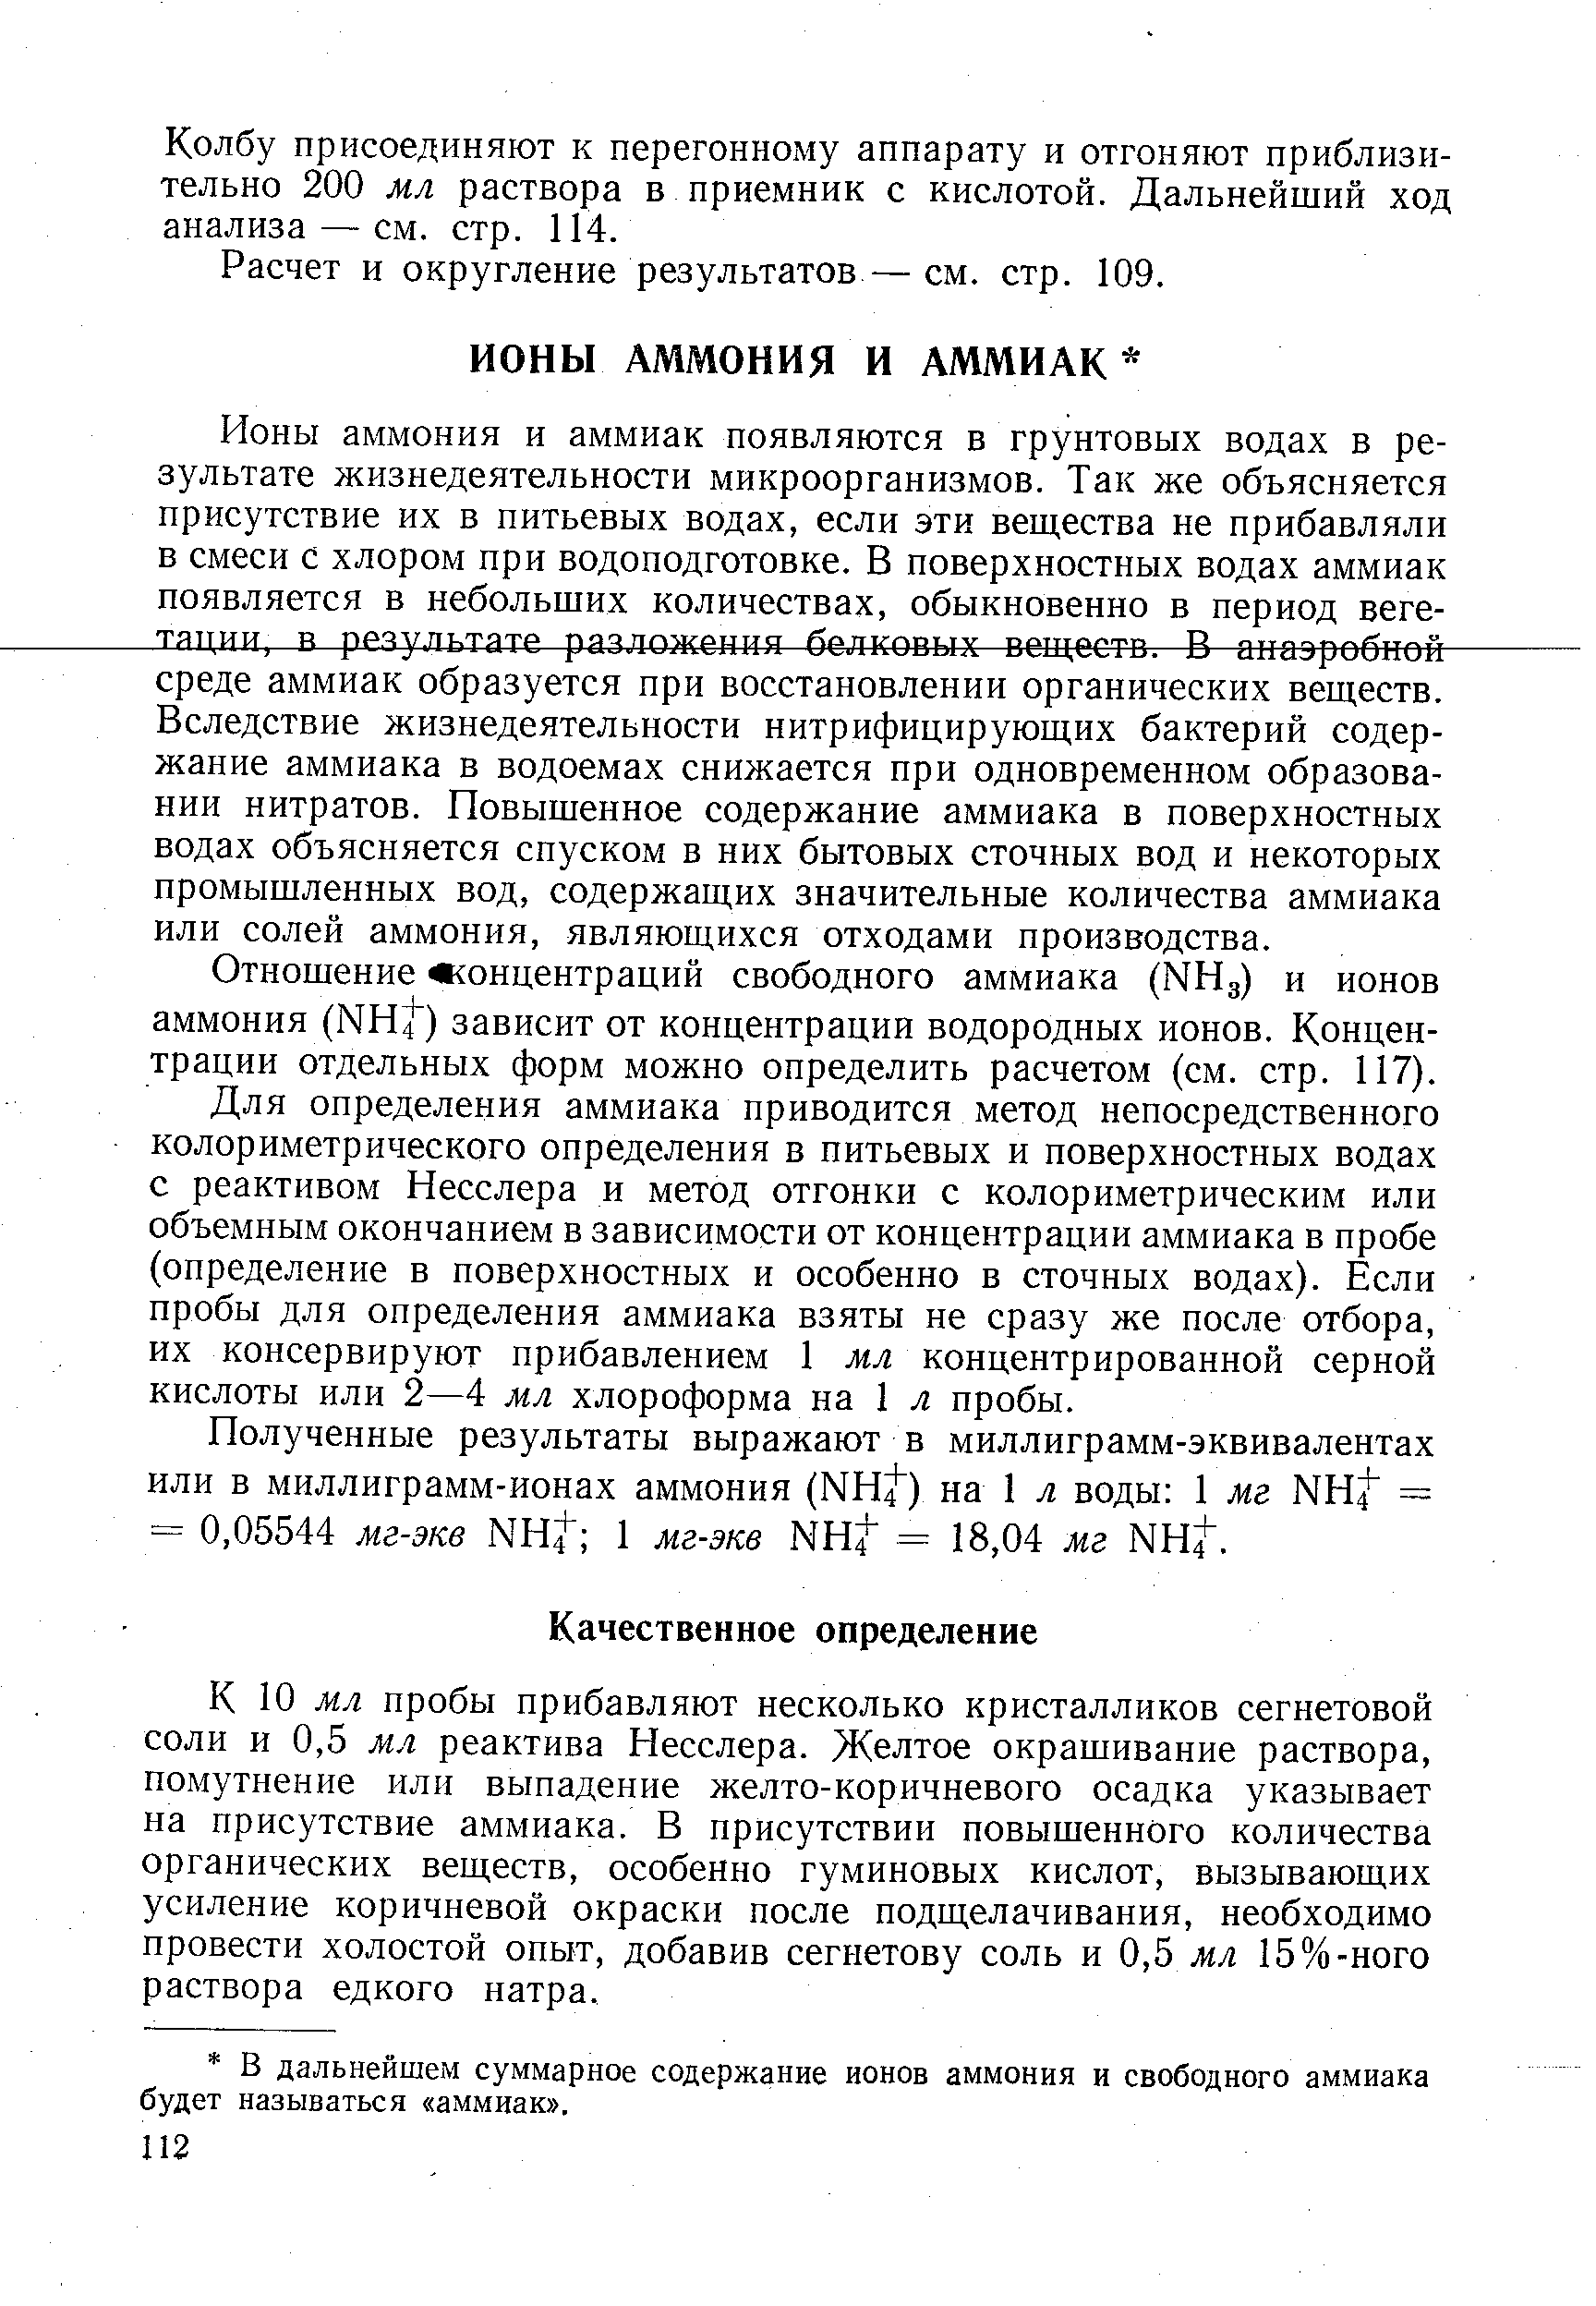 Отношение концентраций свободного аммиака (ННд) и ионов аммония (МН4 ) зависит от концентрации водородных ионов. Концентрации отдельных форм можно определить расчетом (см. стр. 117).